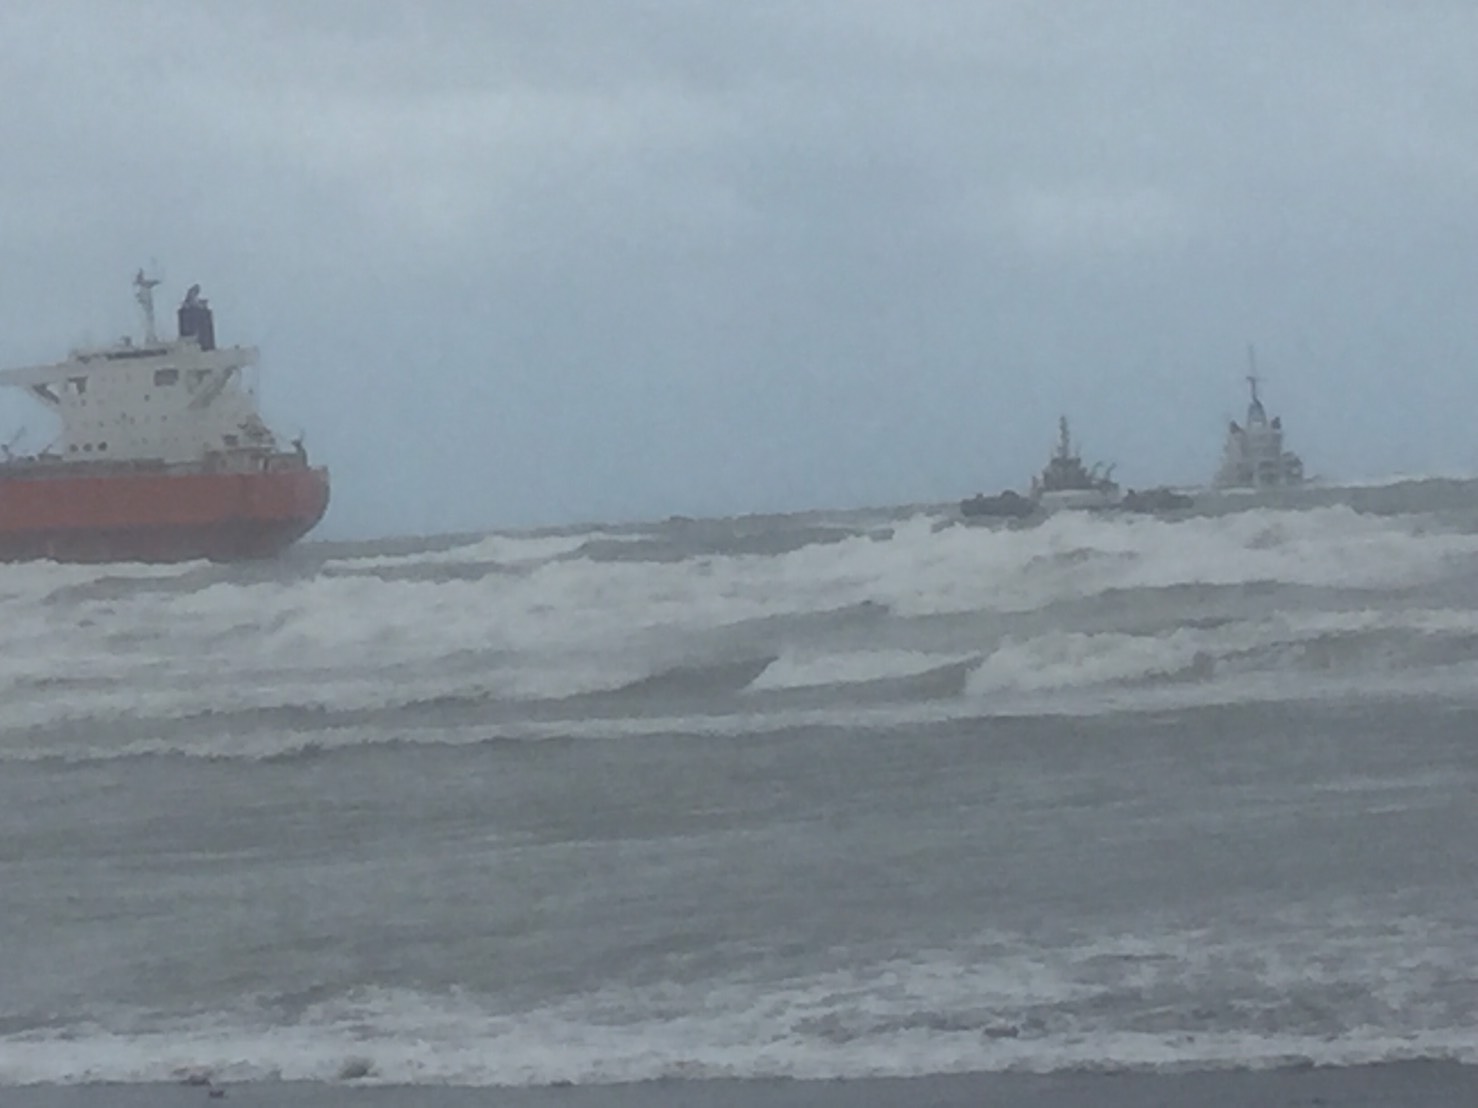 「哈威輪」擱淺因海象惡劣 拖帶作業不順利而未能脫困 航港局要求船東速謀對策 以利完成拖救 | 文章內置圖片